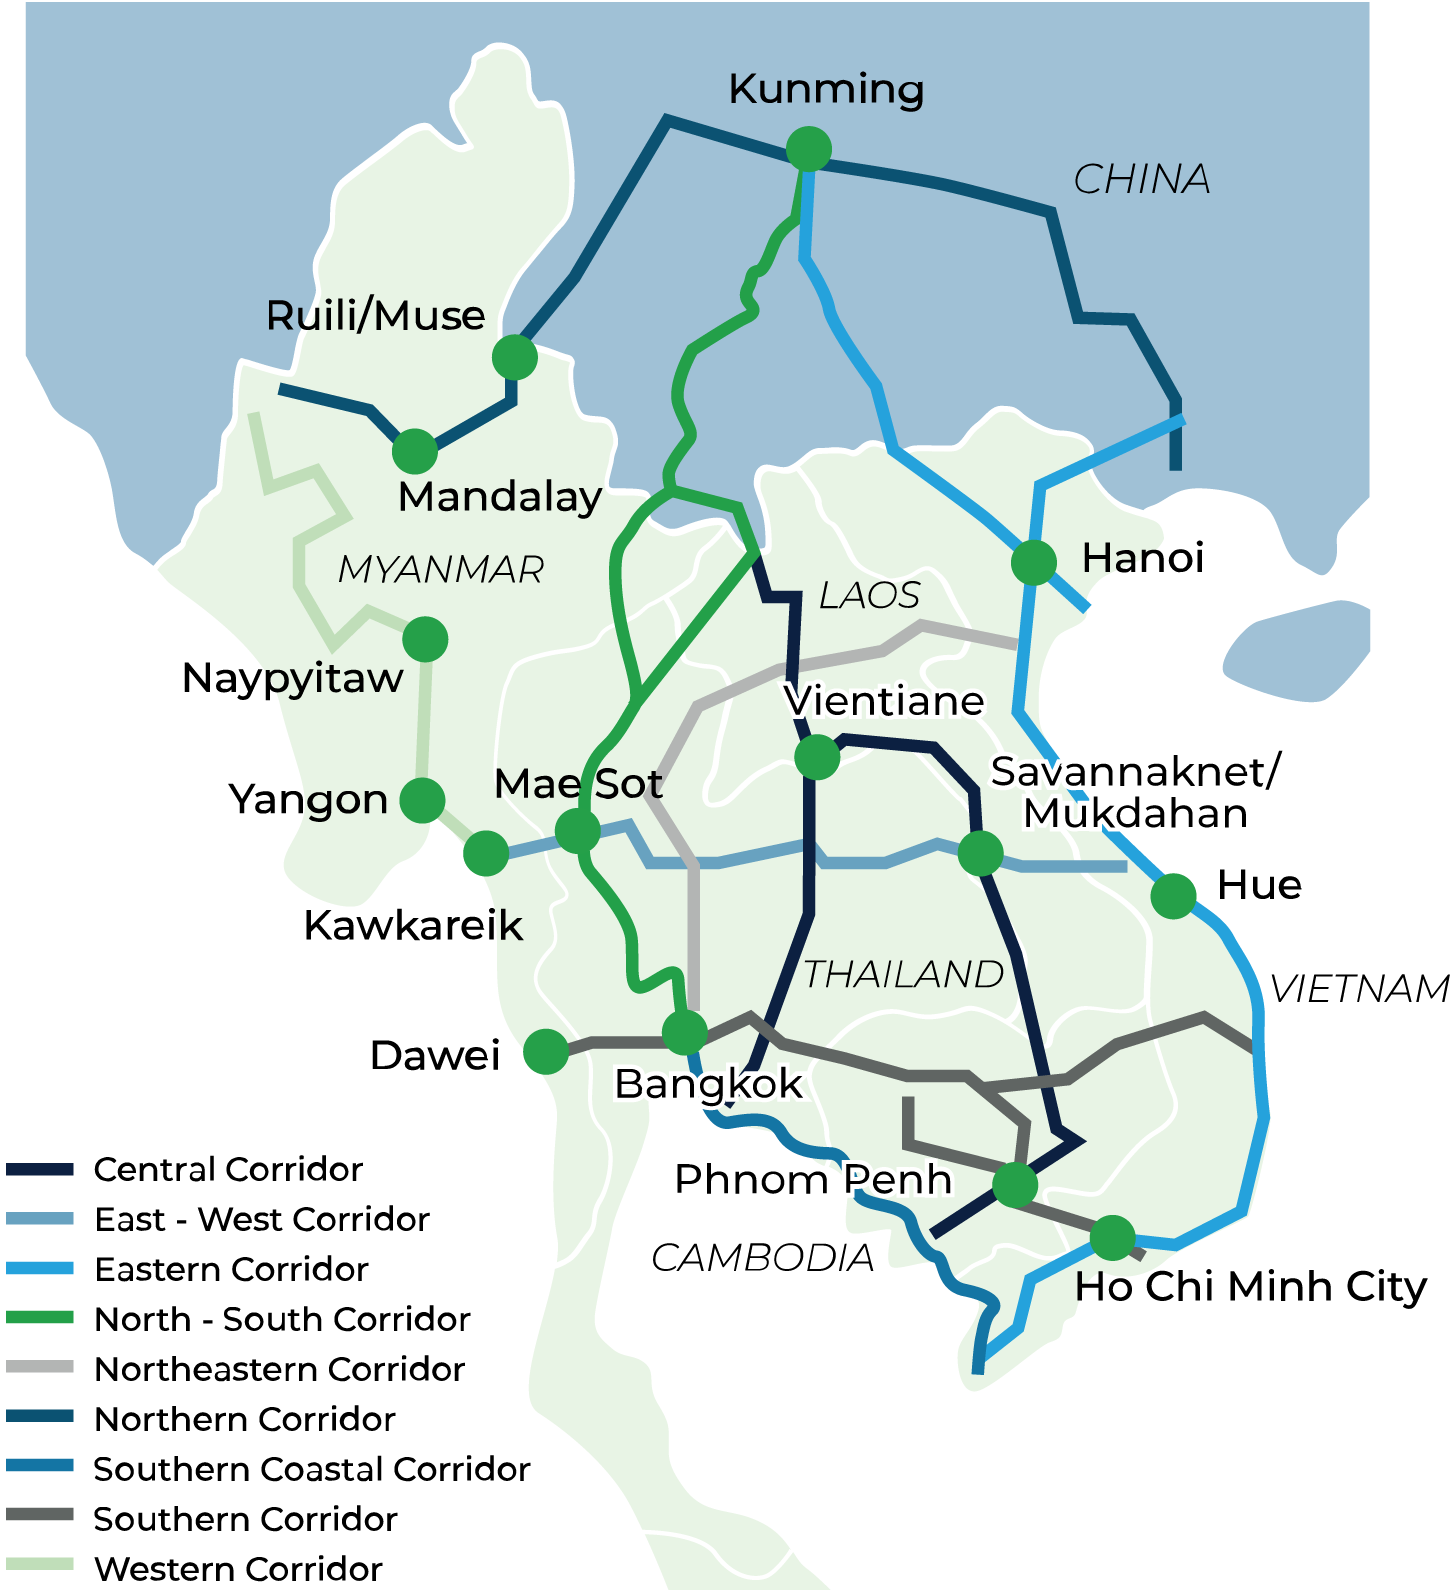 China-Indochina Peninsula